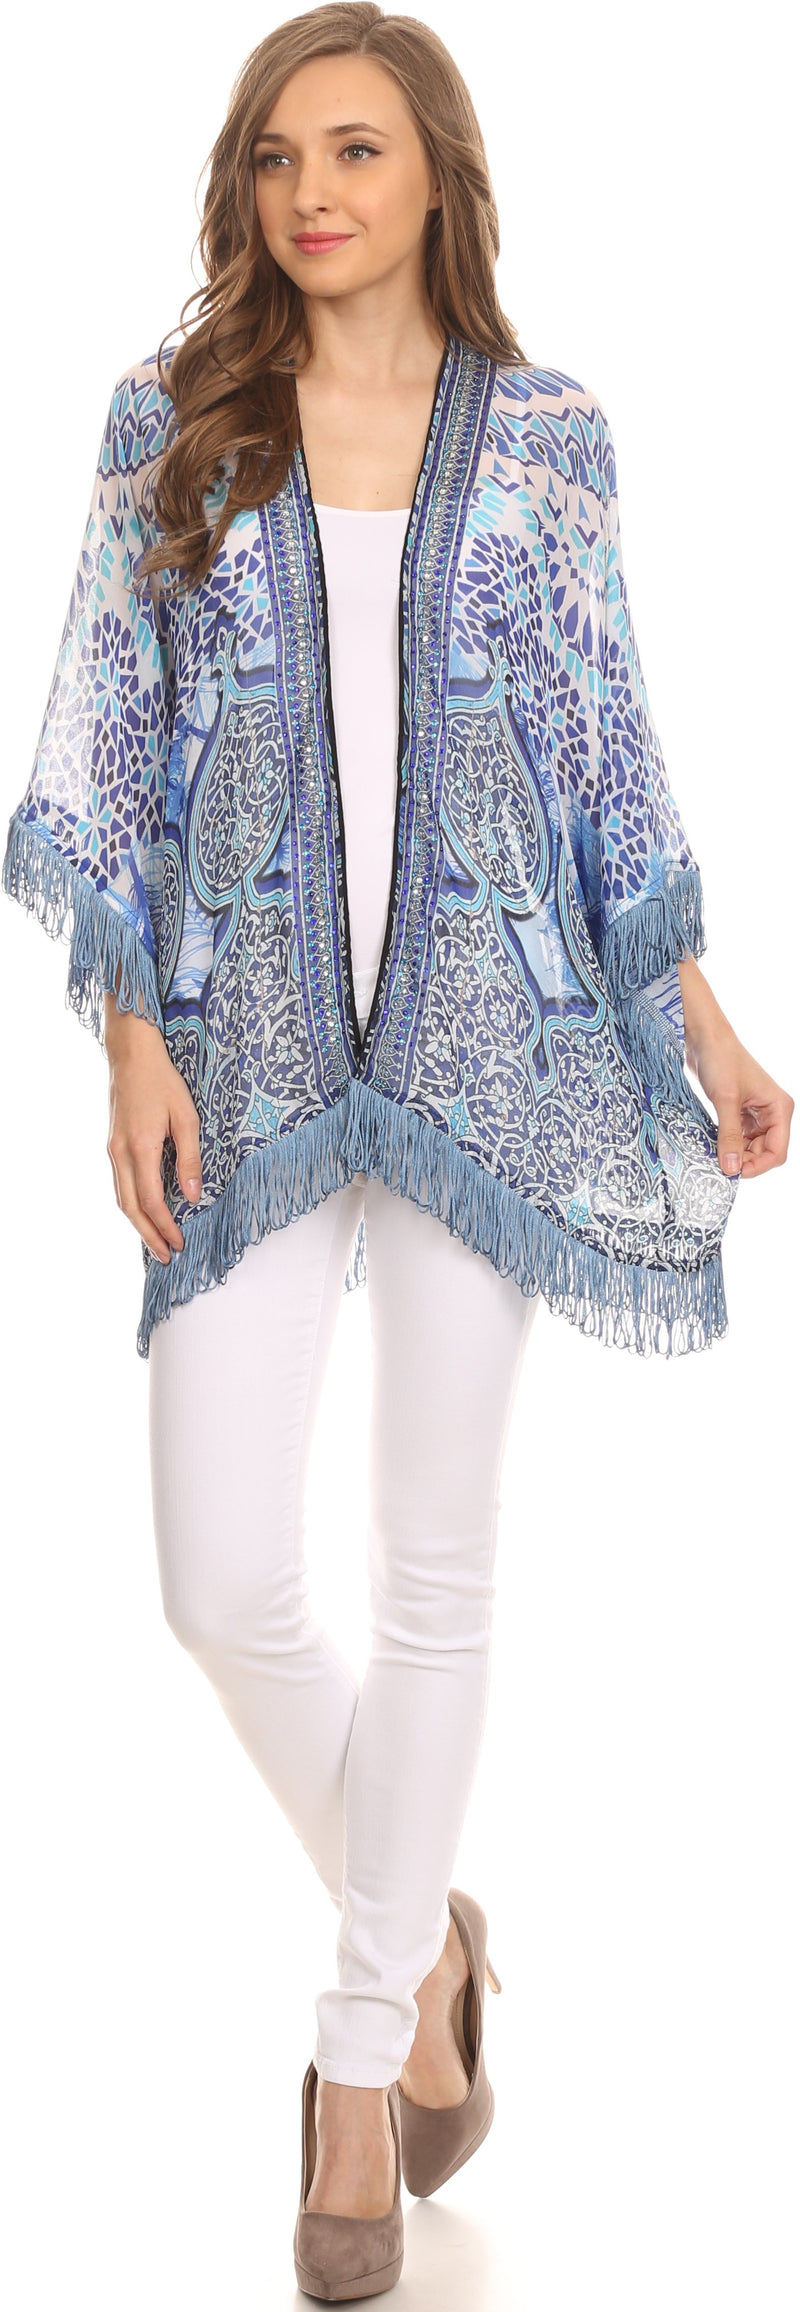 Sakkas Kimono Finley Sheer Kimono Top Cardigan Jacket With With Fringe And Design Print